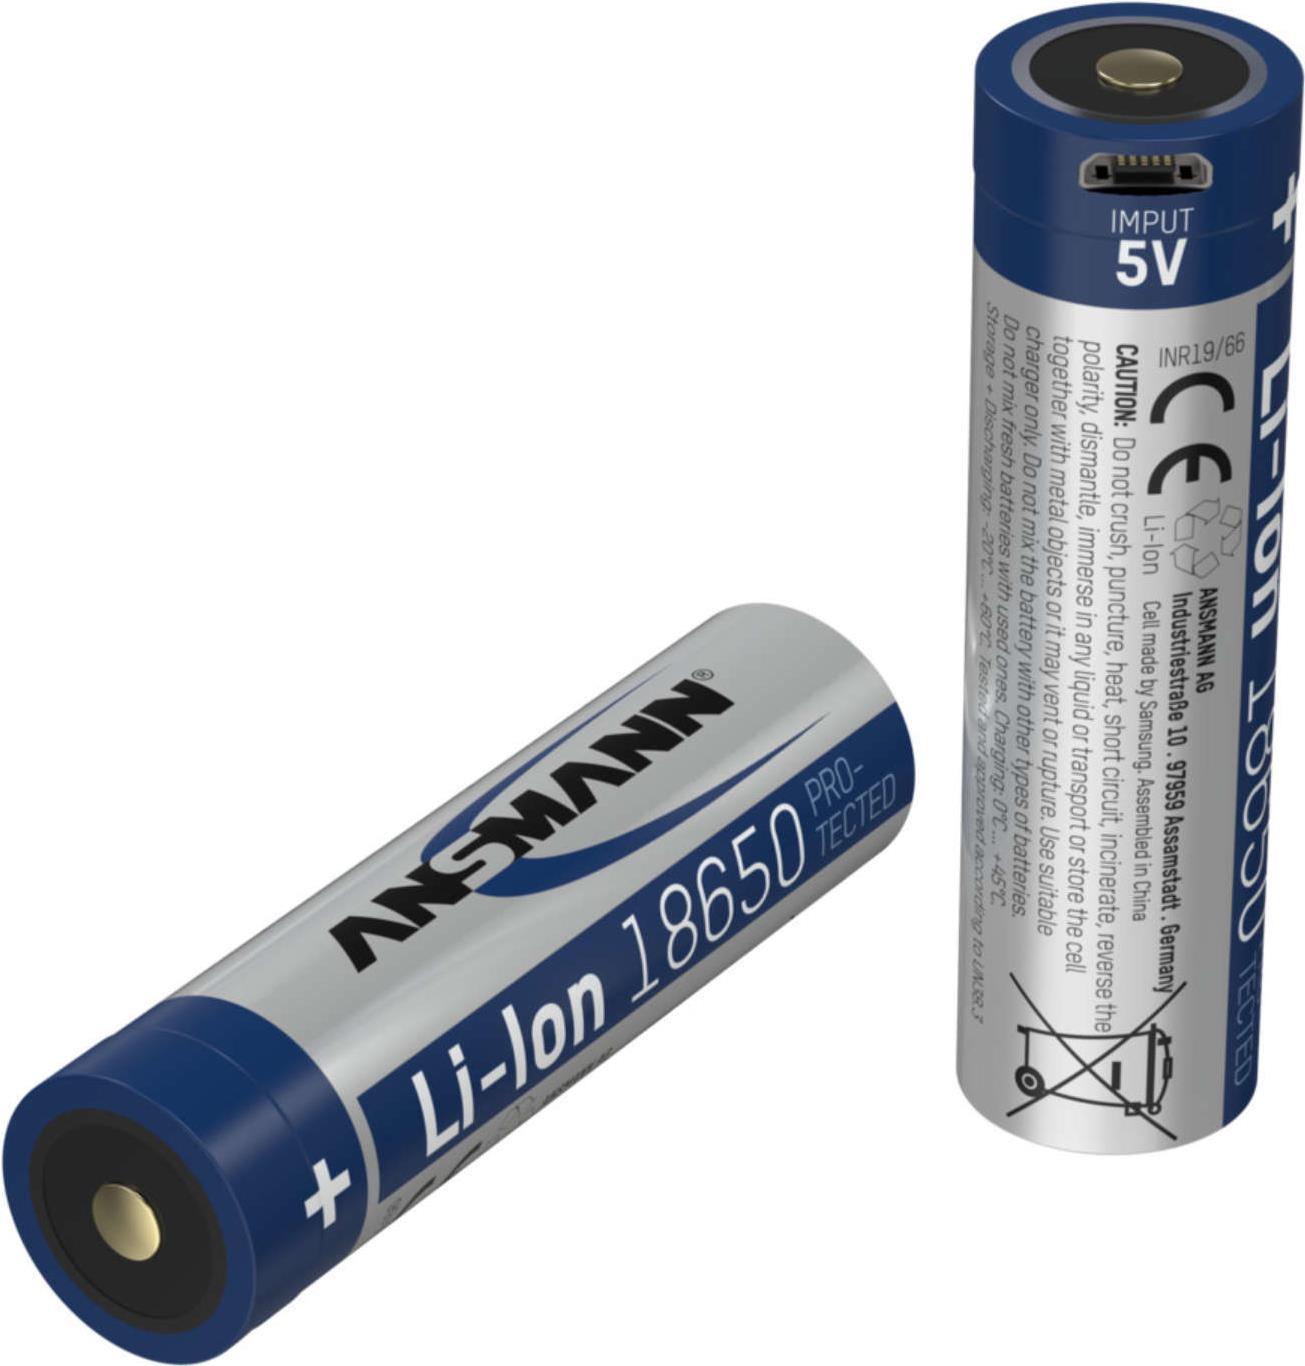 Ansmann 1307-0002 Haushaltsbatterie Wiederaufladbarer Akku 18650 Lithium-Ion (Li-Ion) (1307-0002)